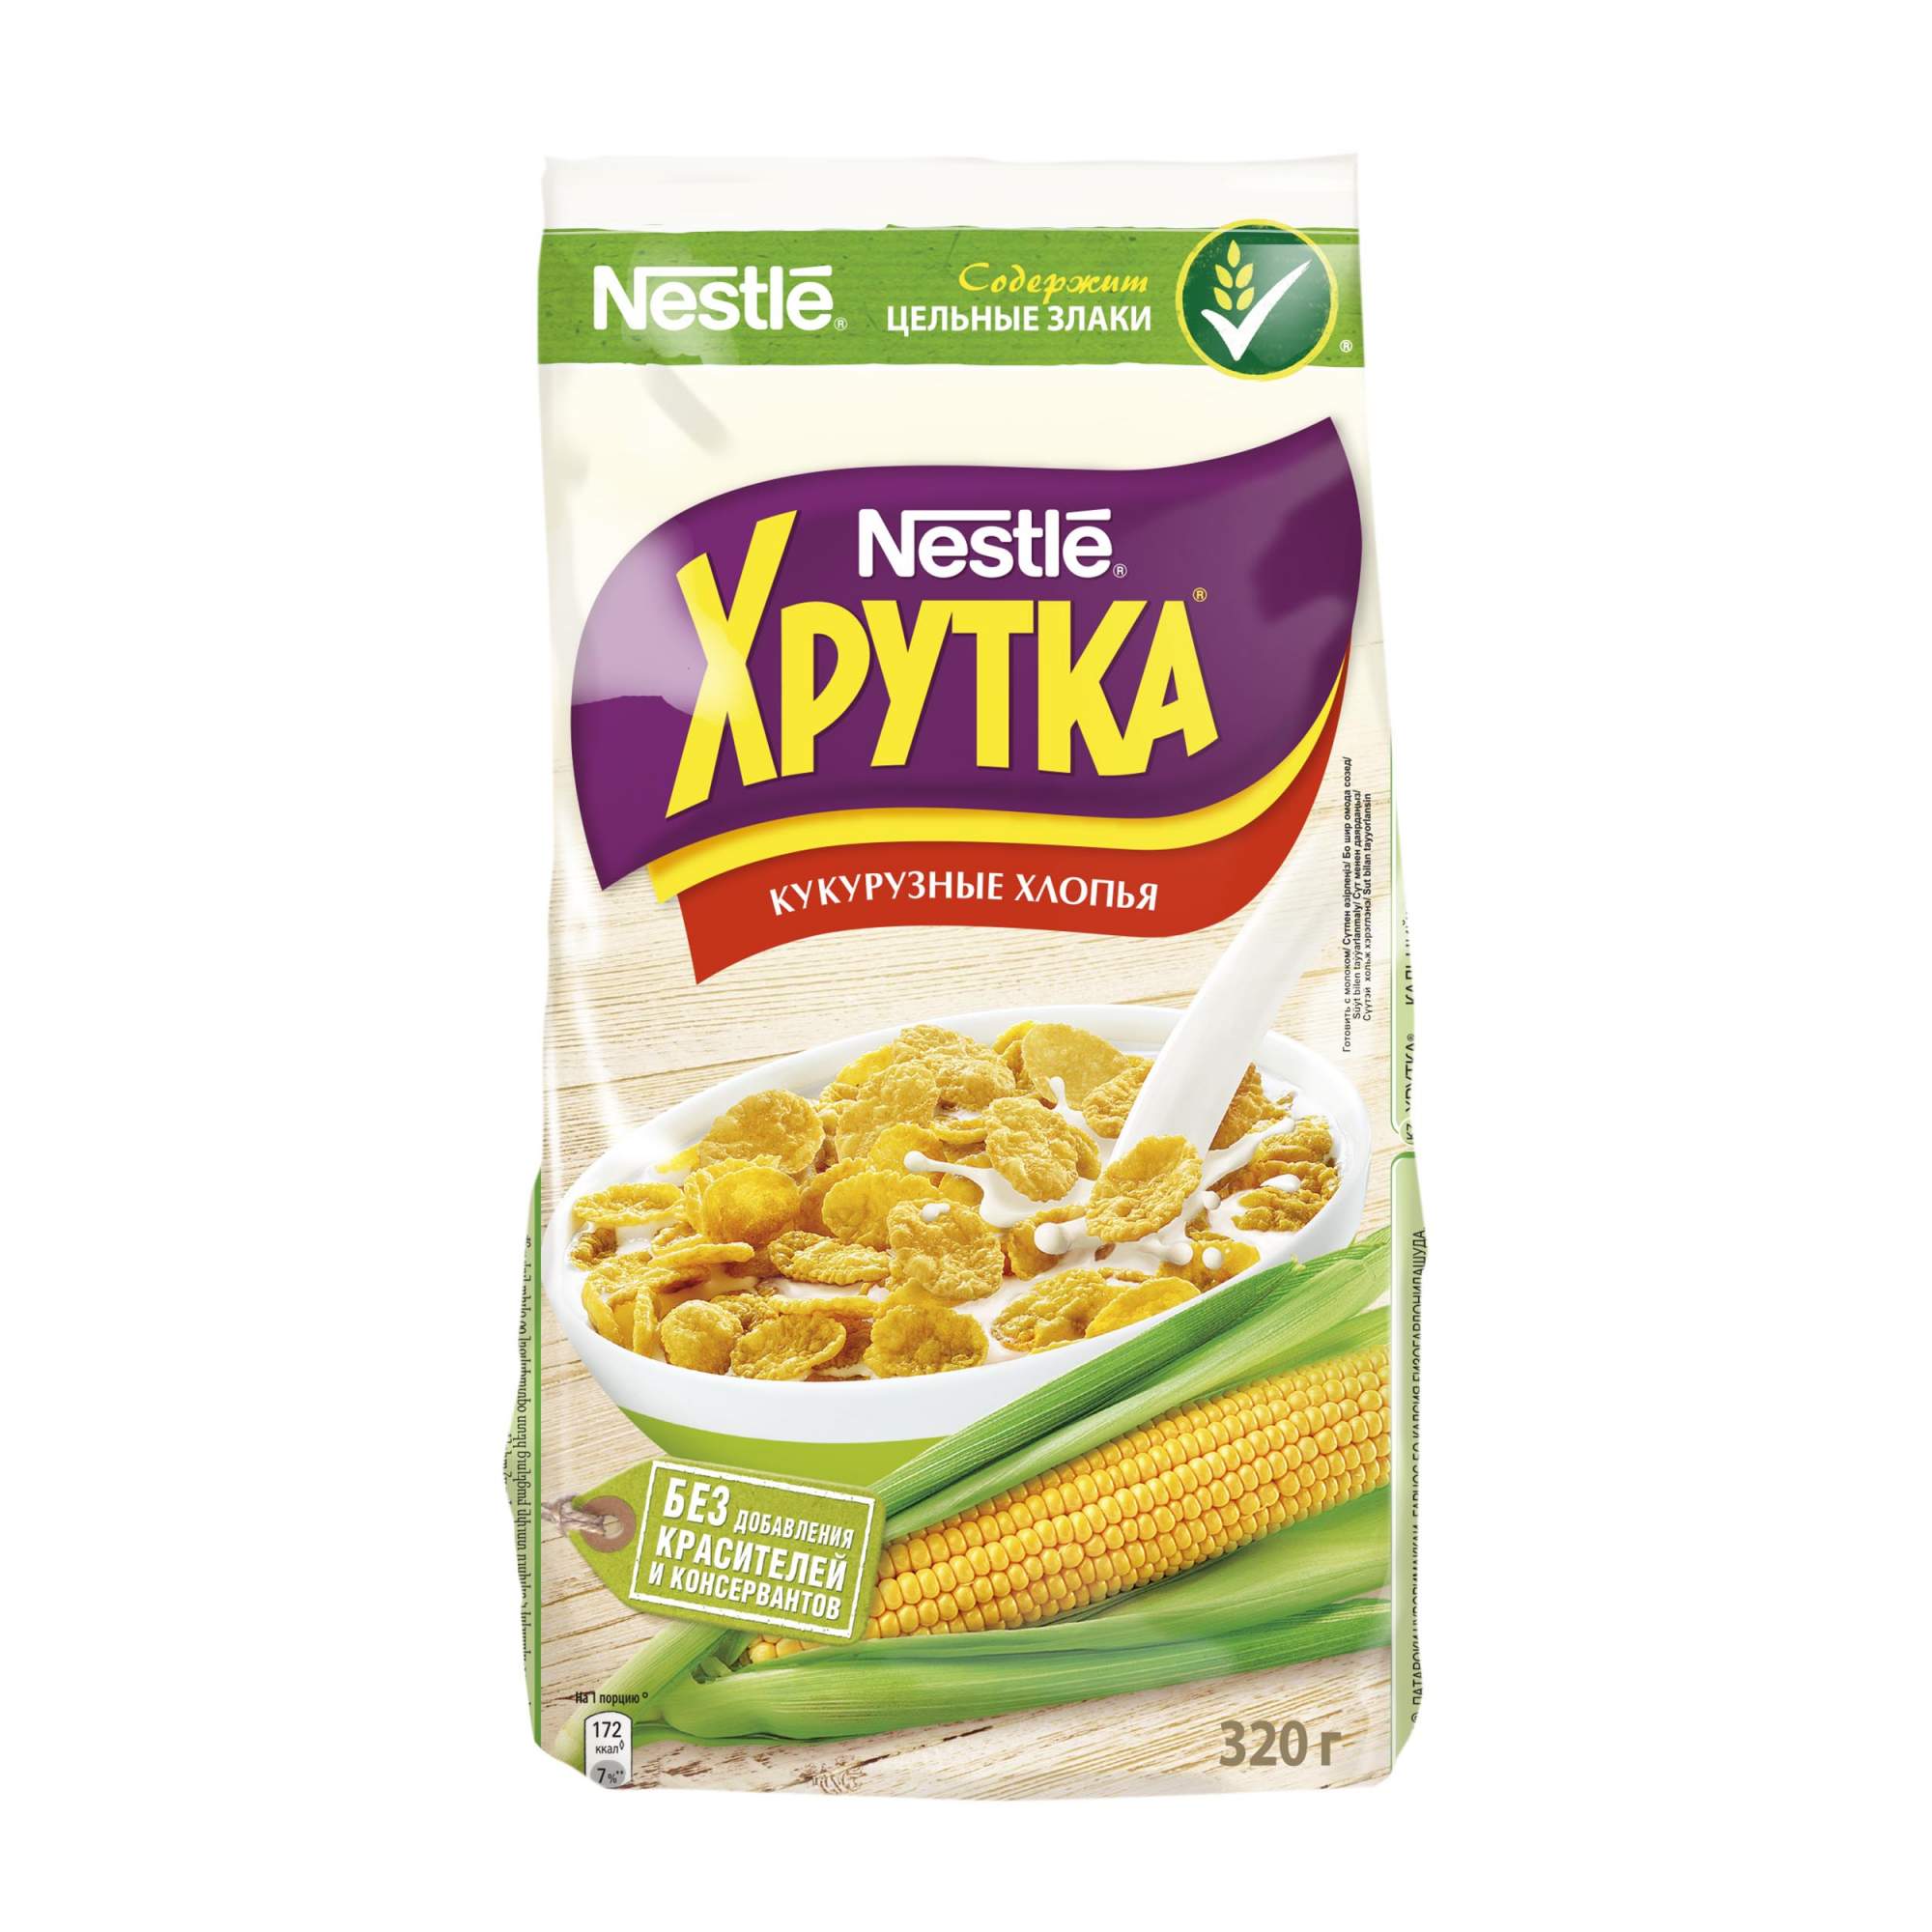 Завтрак Nestle хрутка кукурузные хлопья 320 г